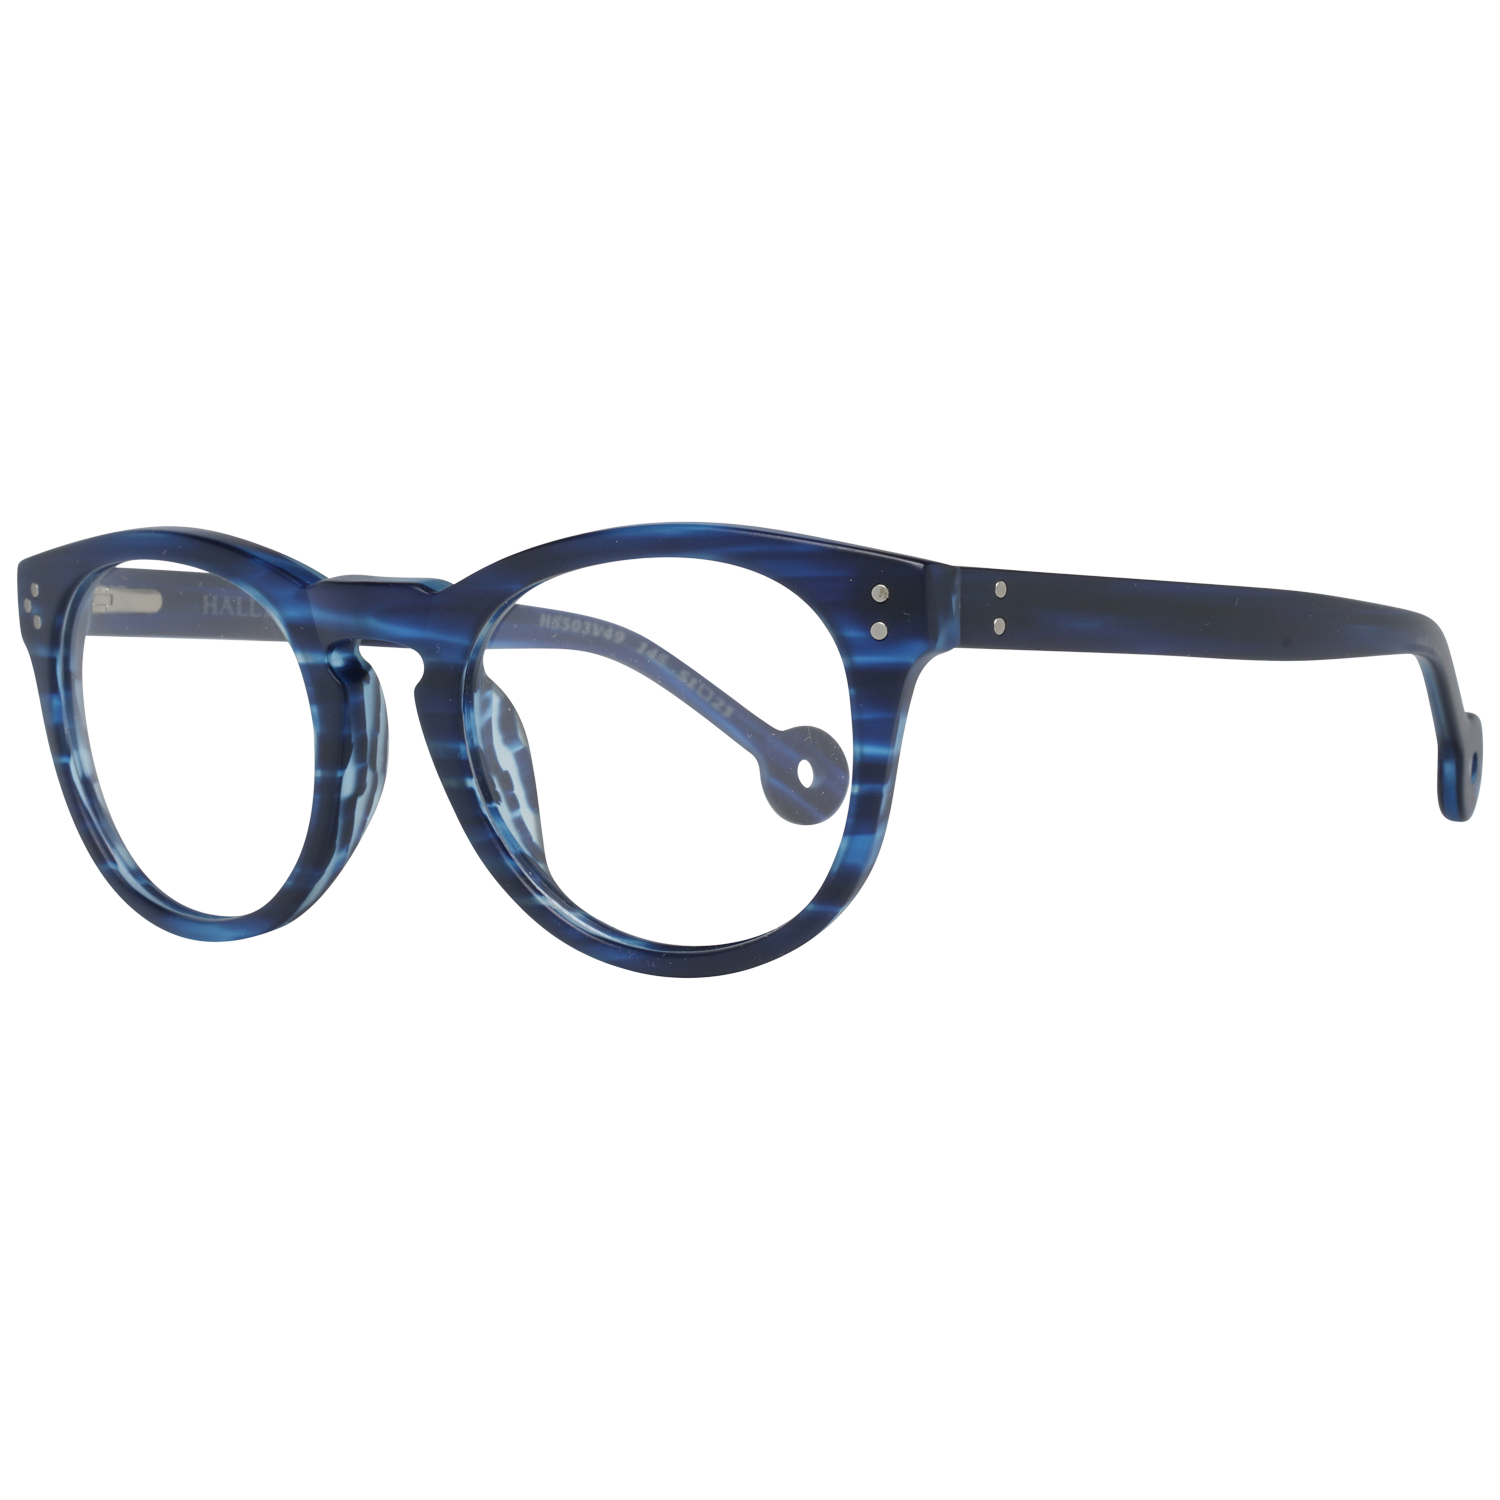 Hally & Son Frames Hally & Son Optical Frame HS503V 49 51 Eyeglasses Eyewear UK USA Australia 